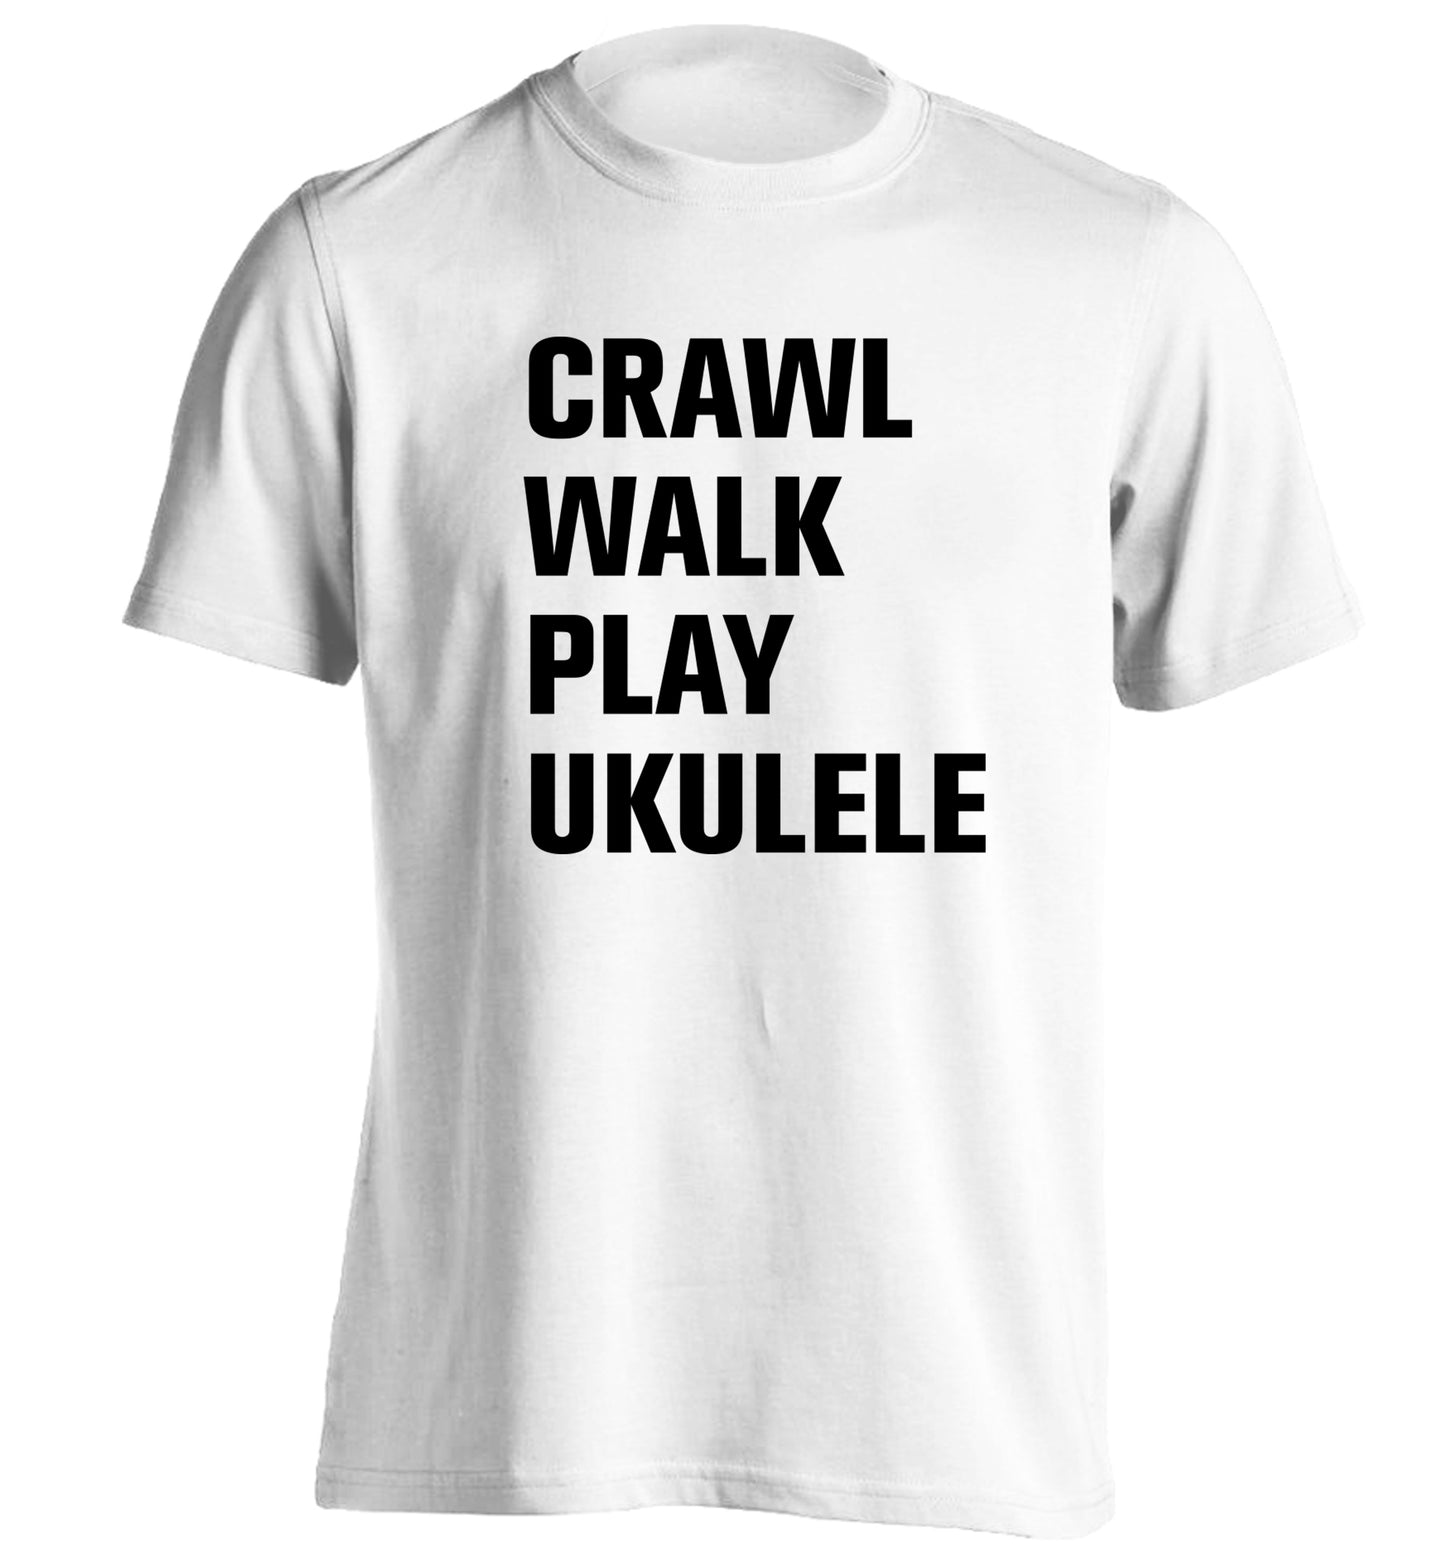 Crawl walk play ukulele adults unisex white Tshirt 2XL